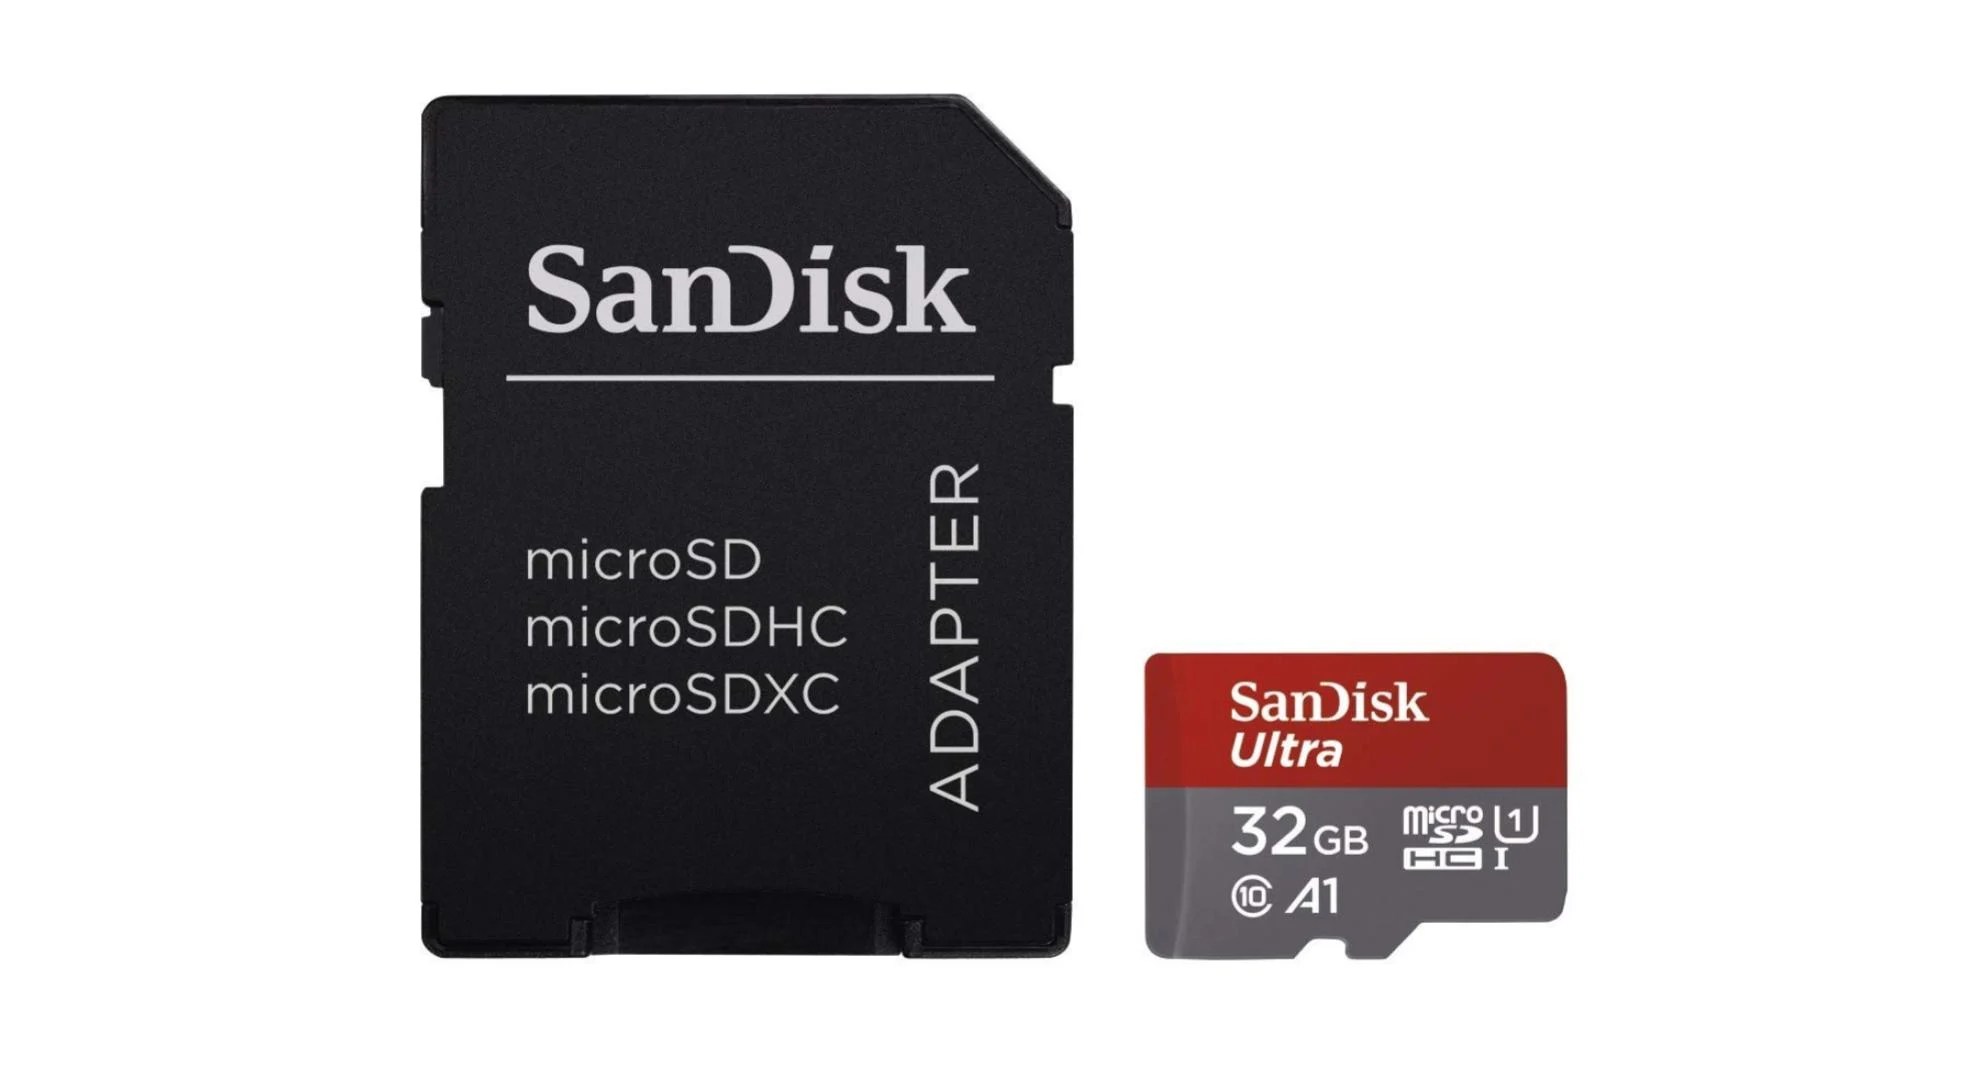 Un tout petit prix de 5,99 euros pour la carte microSD SanDisk Ultra 32 Go